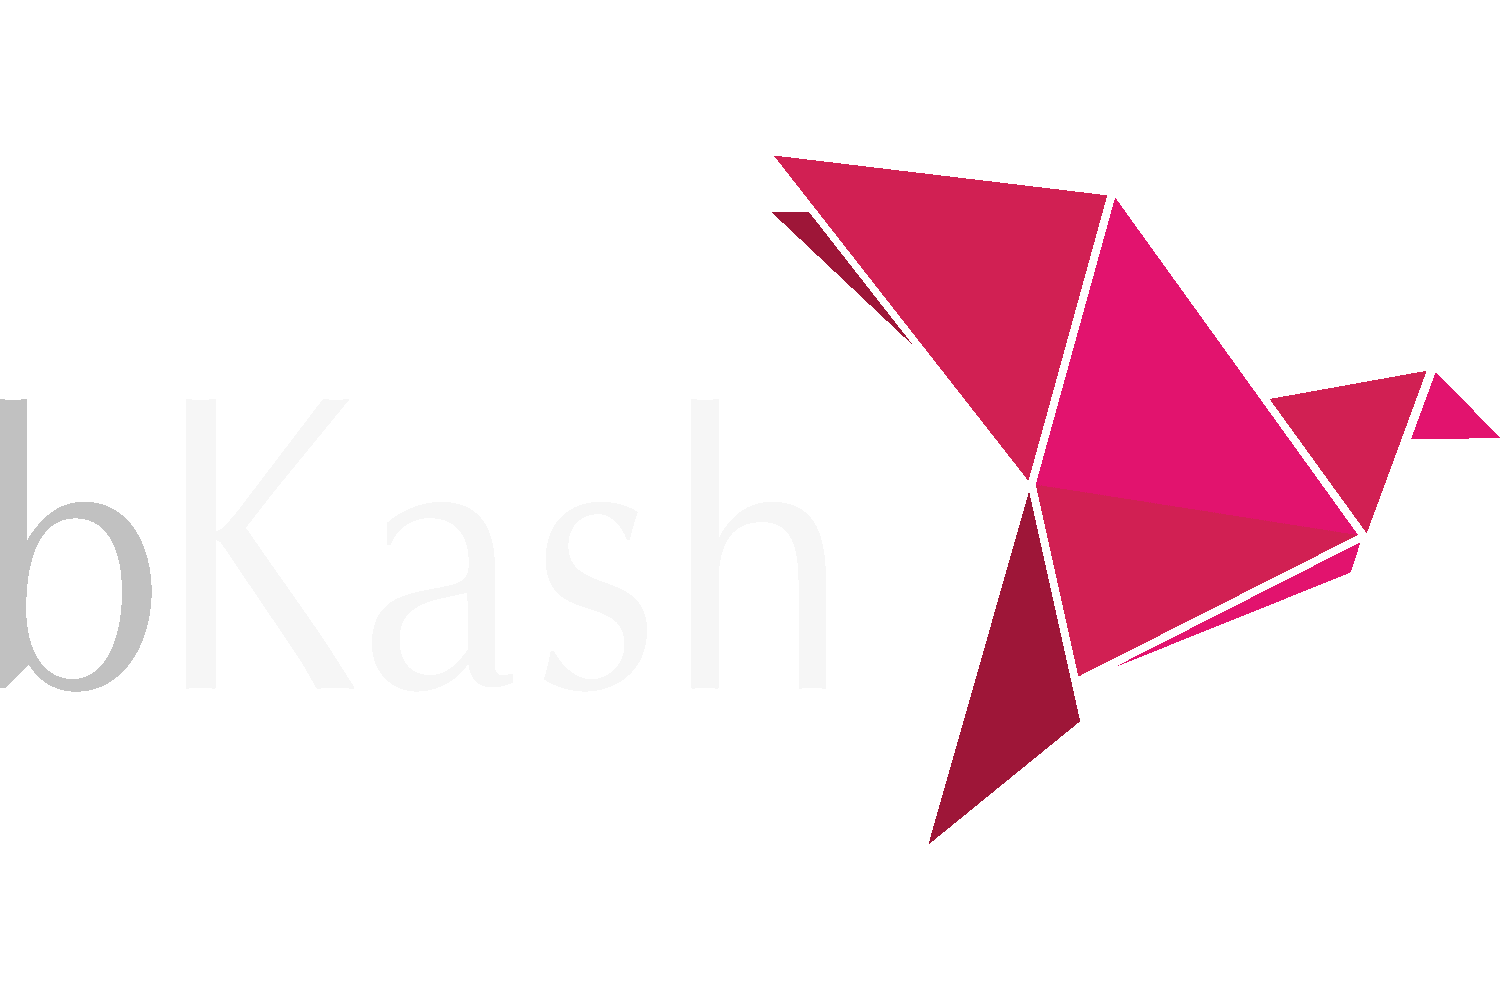 Bkash-logo